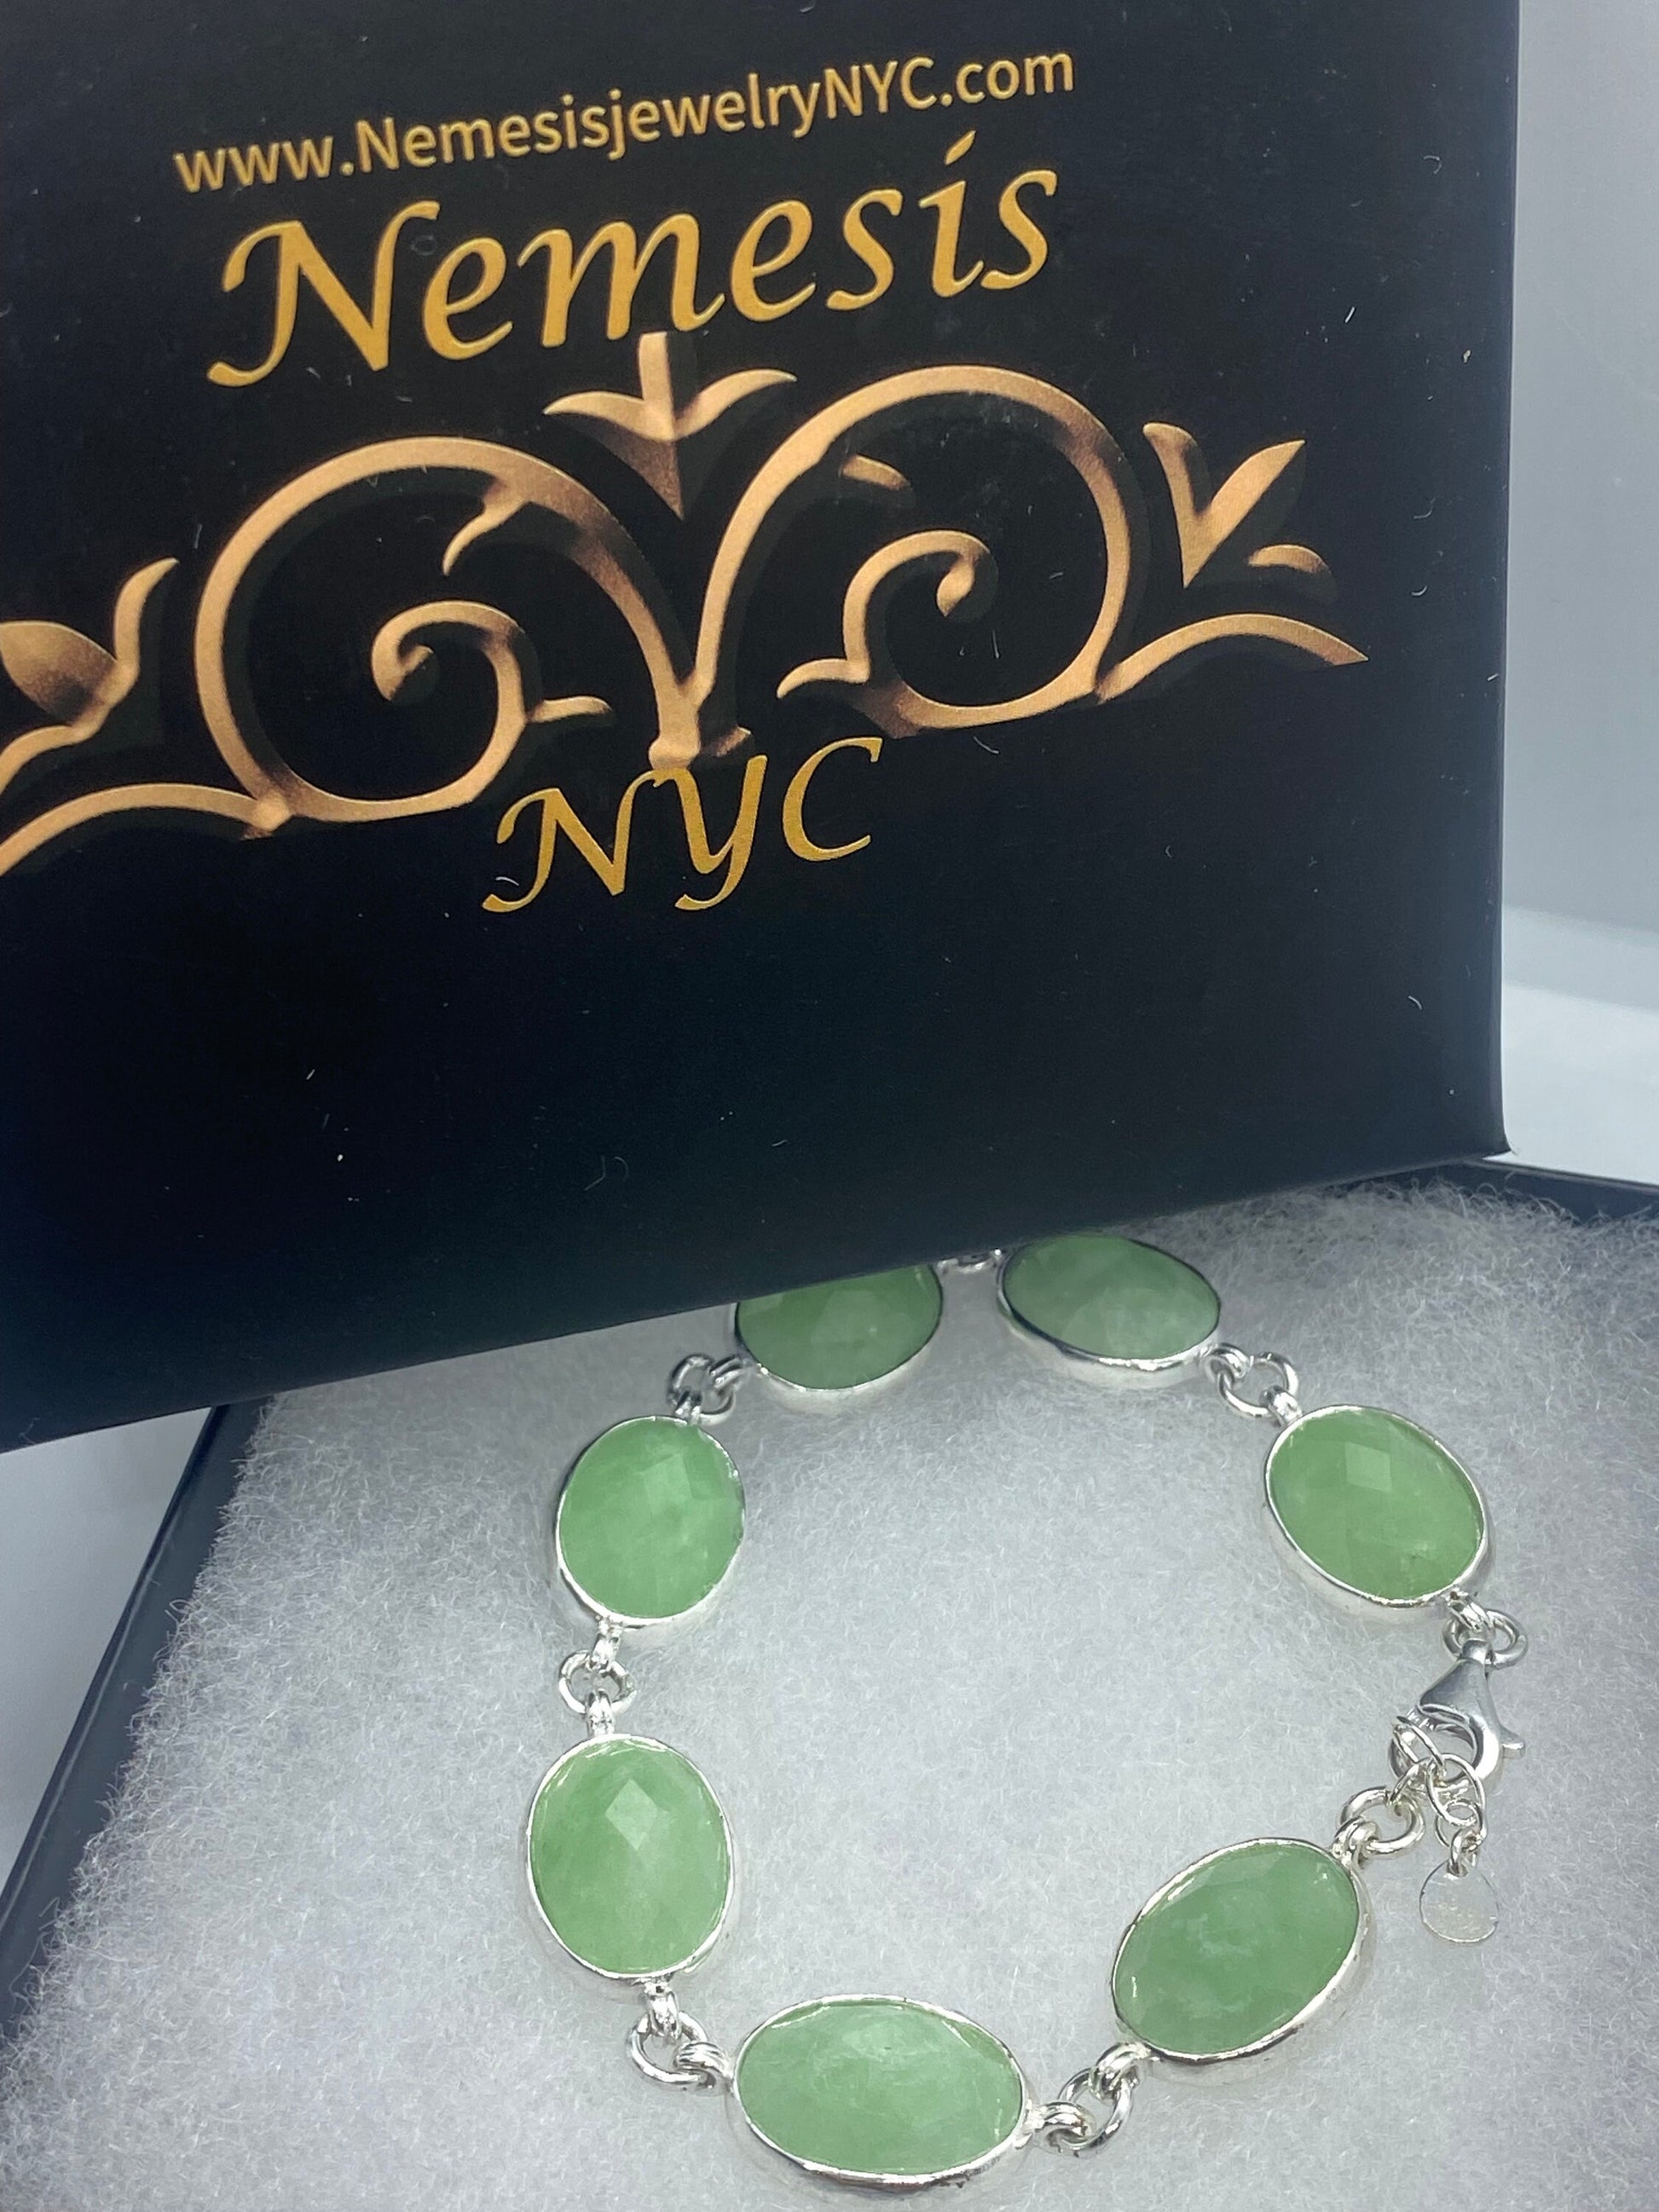 Vintage Green Jade Tennis Bracelet in 925 Sterling Silver